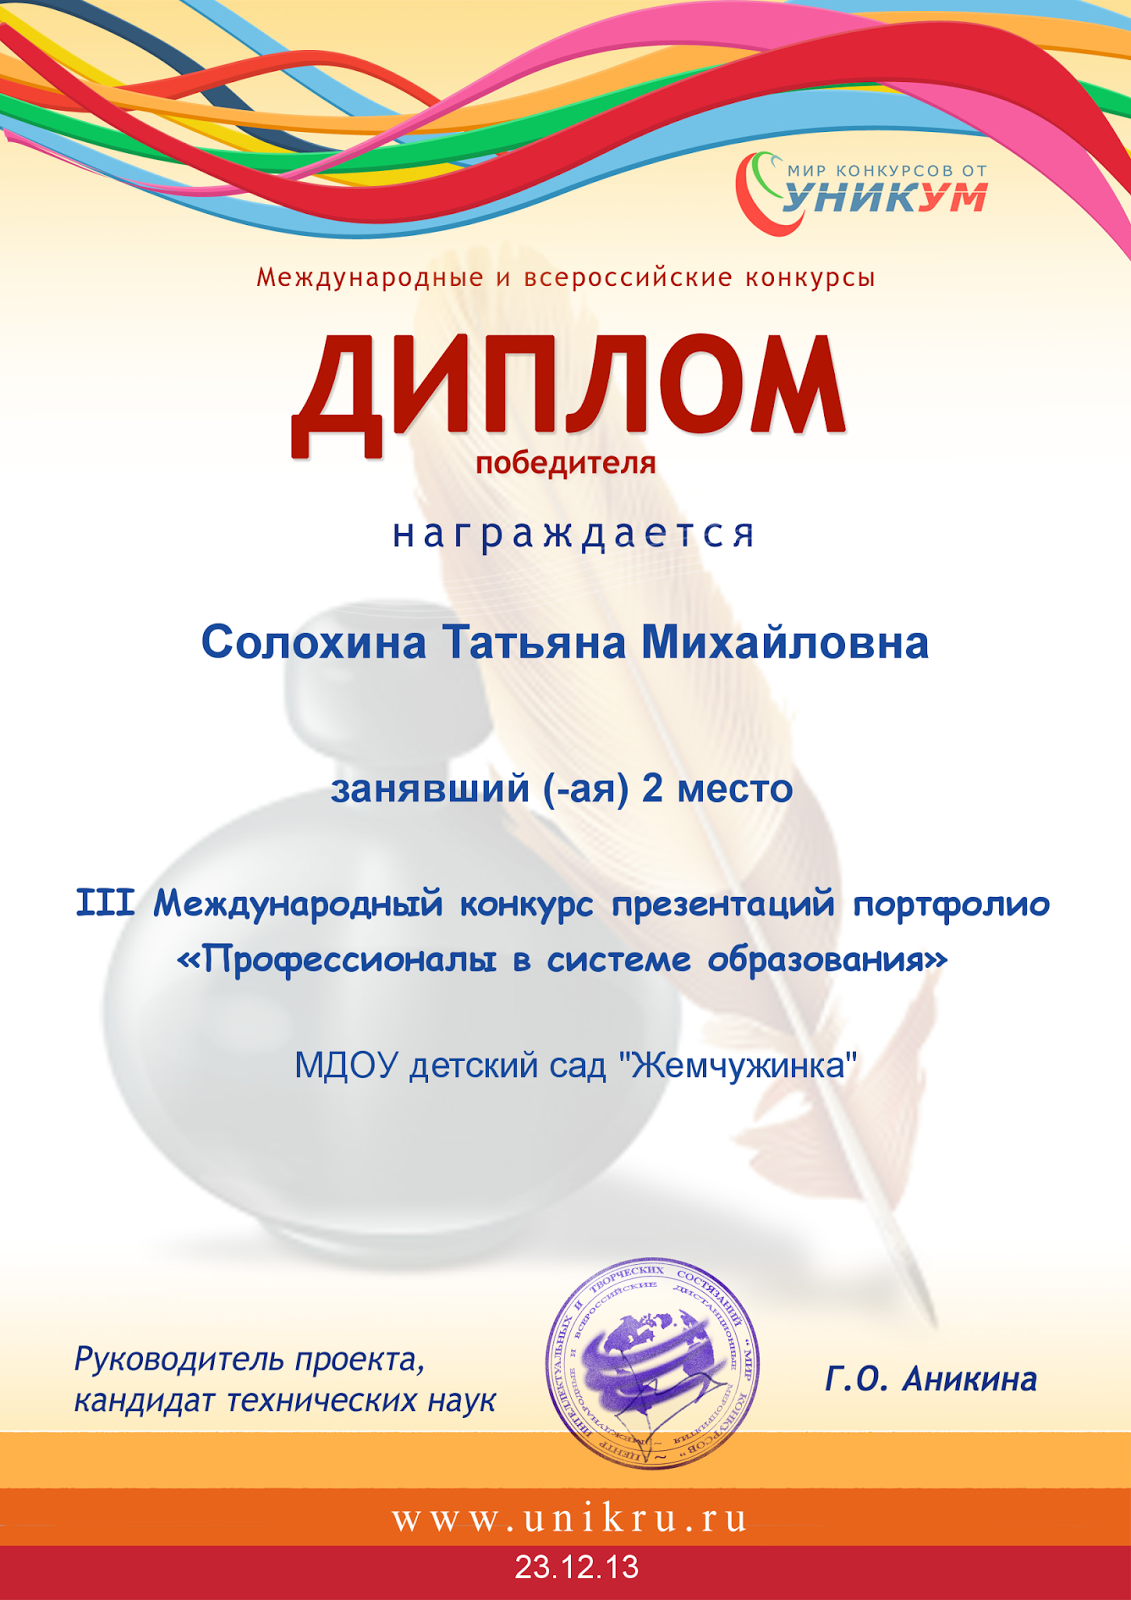 Протокол олимпиады 2014 по г математике результатов 2013 стерлитамак г